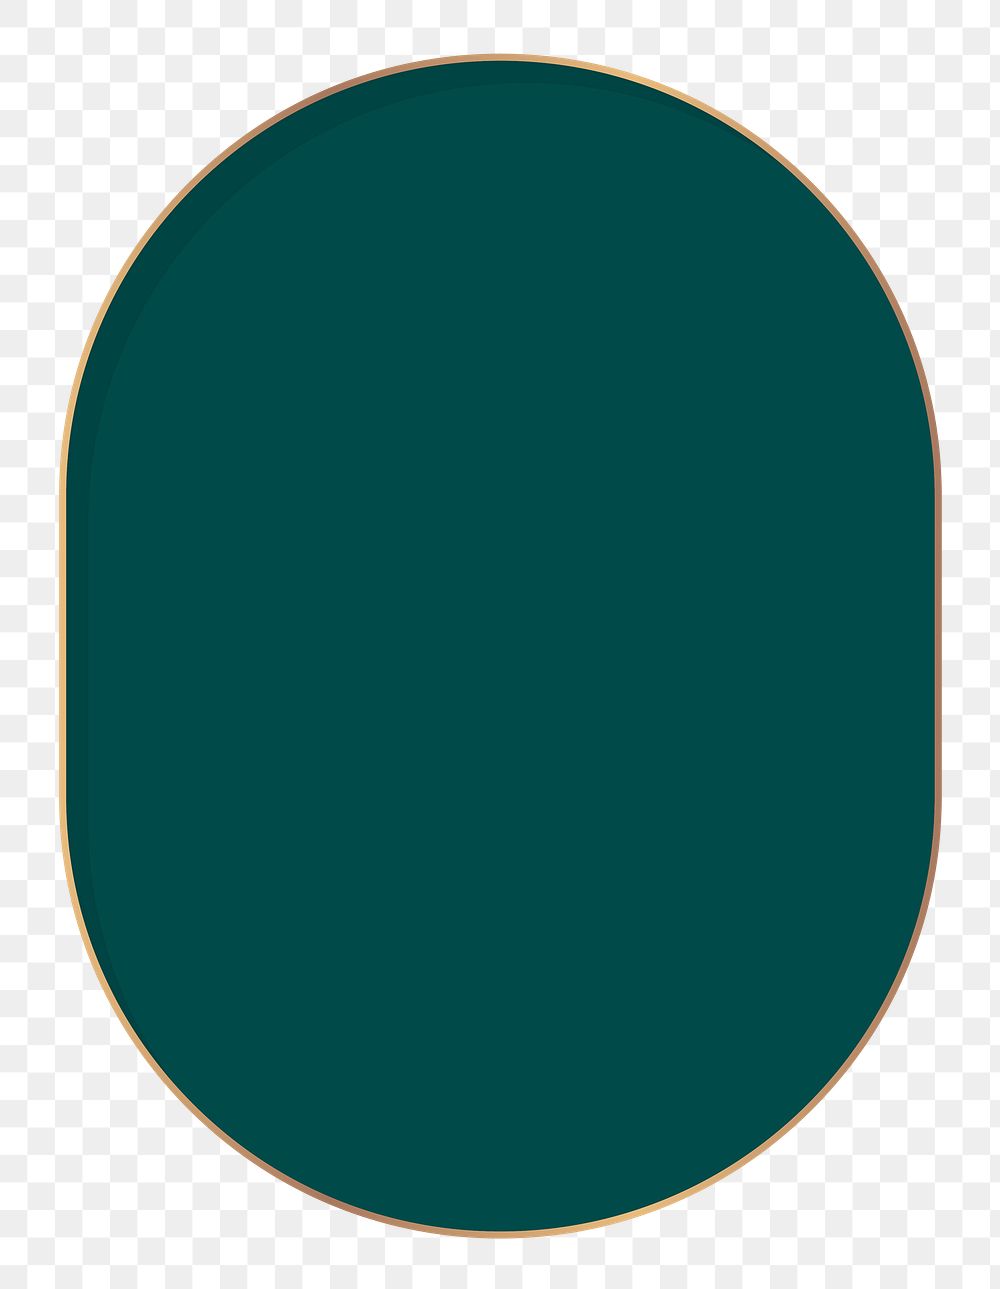 Green frame png sticker, transparent background